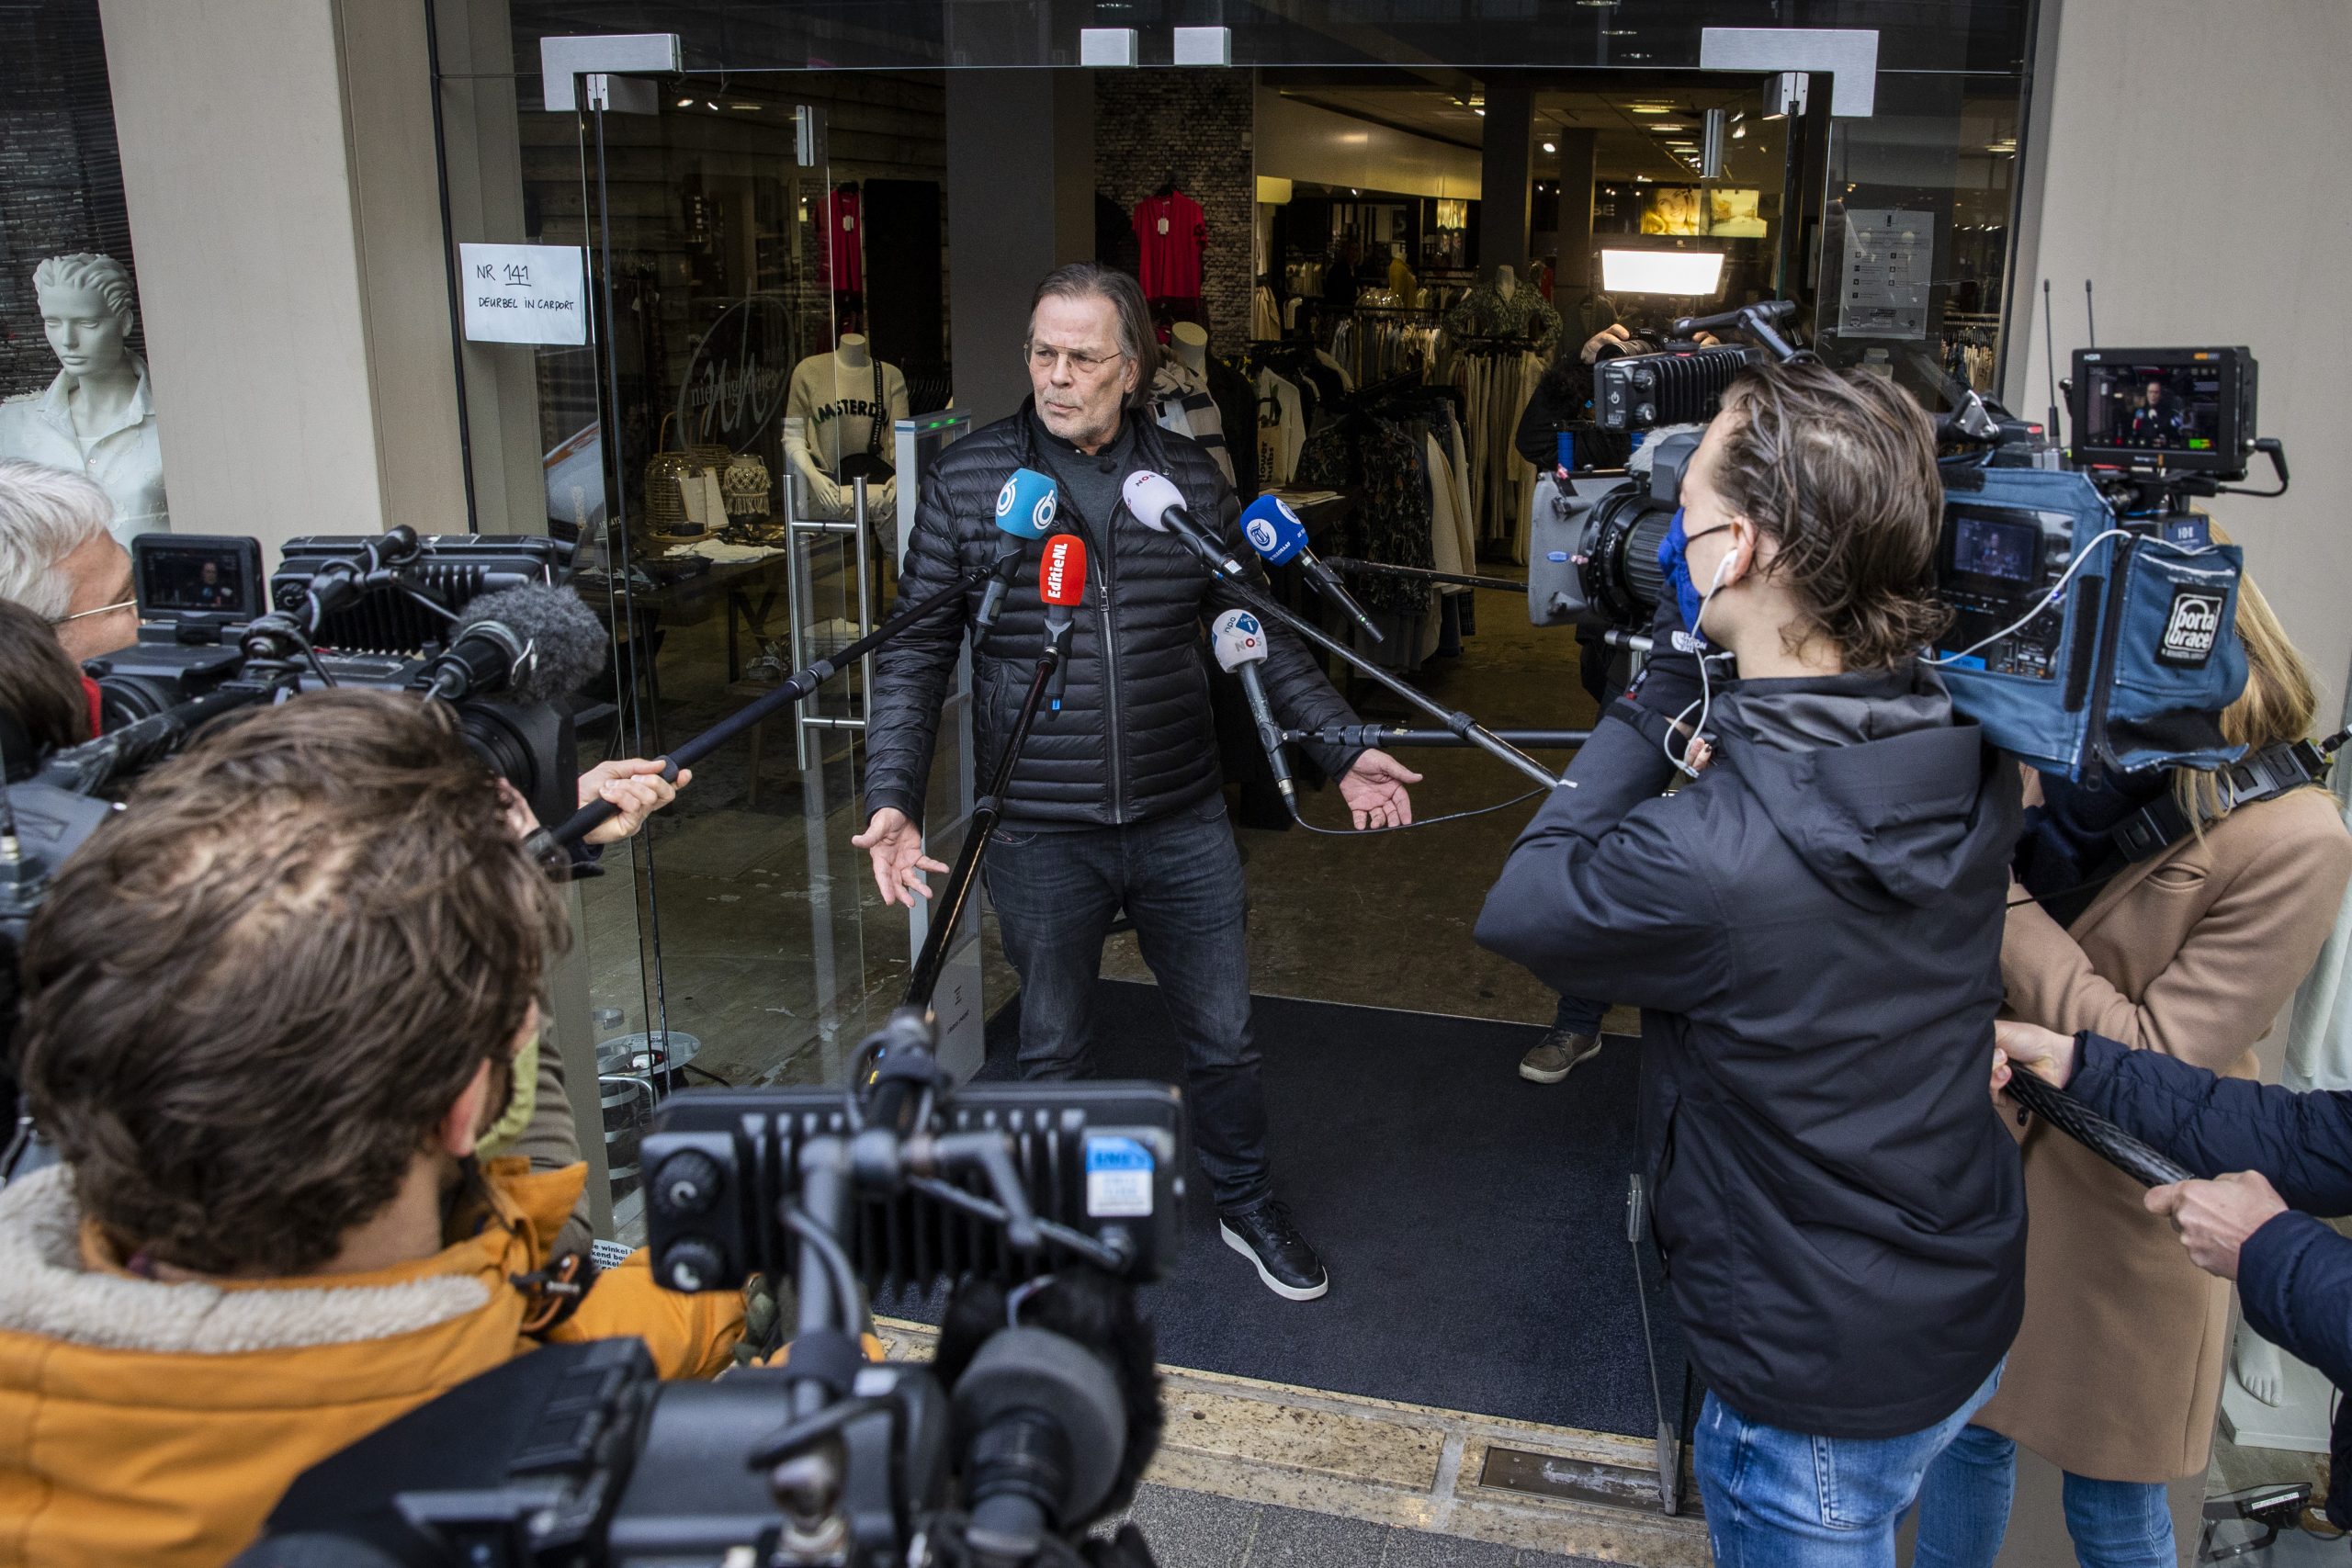  Een winkelier in Klazienaveen staat media te woord na het openen van de deuren voor het publiek. Foto: ANP/Vincent Jannink